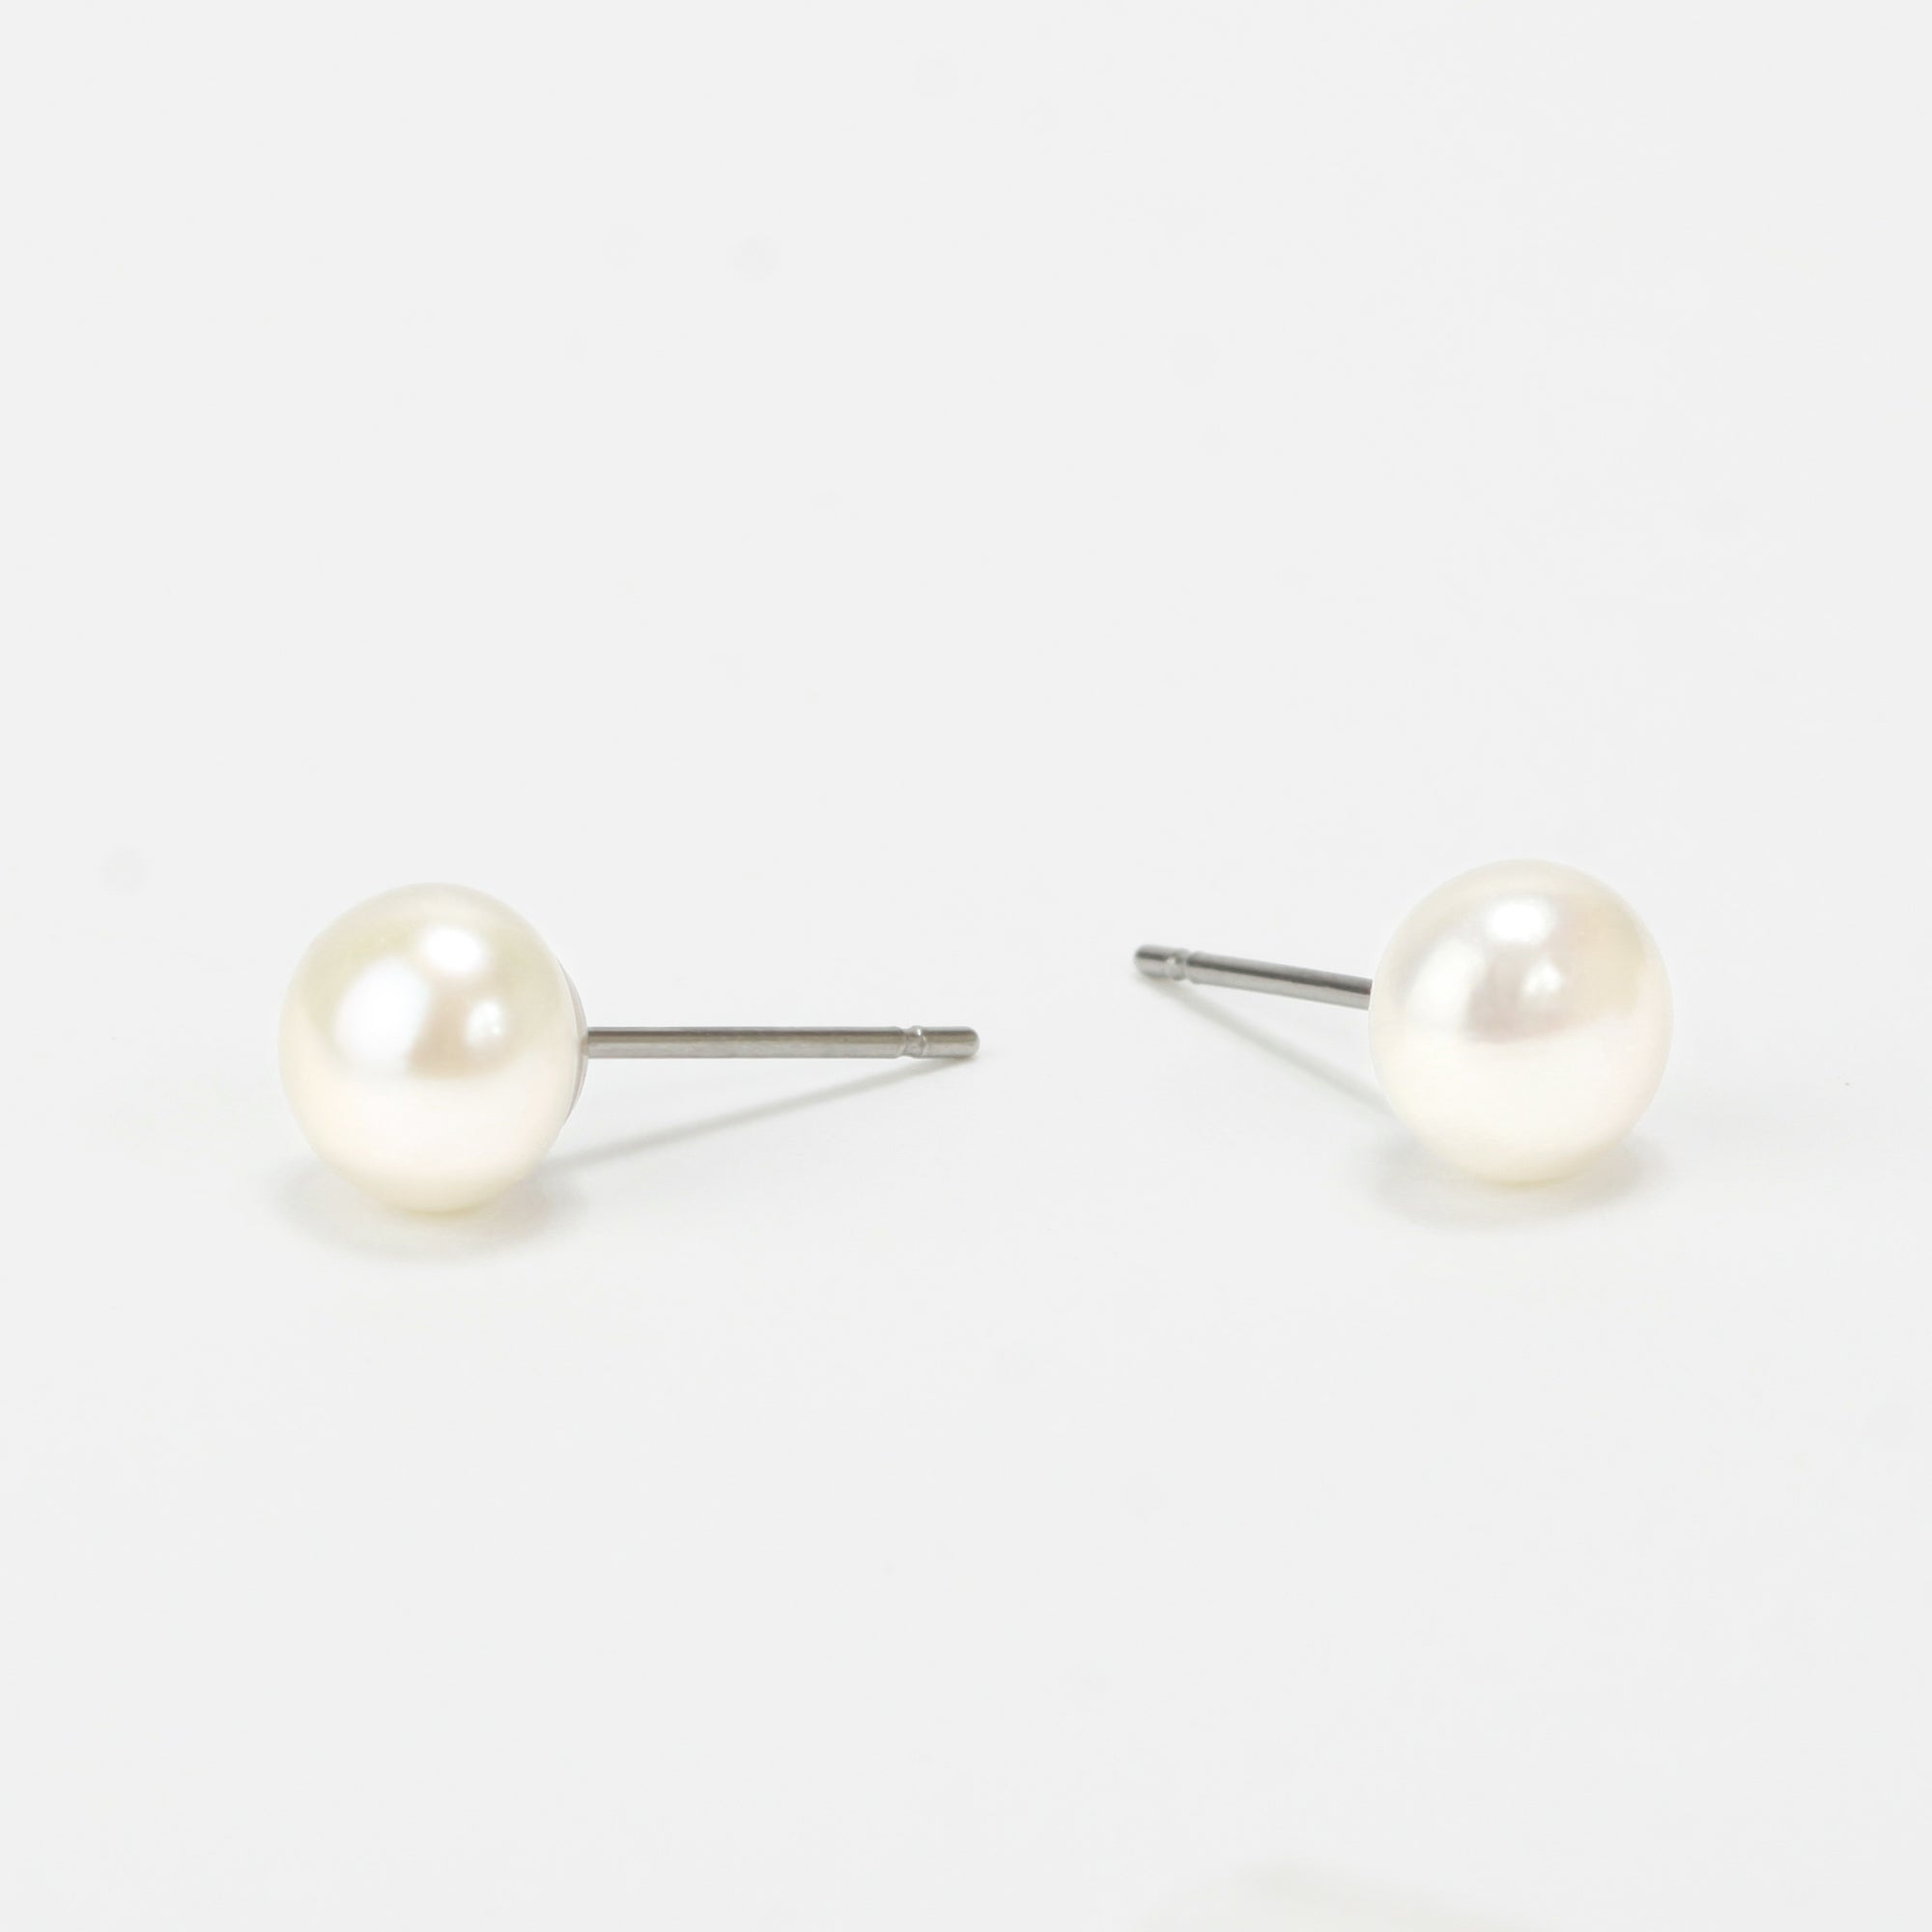 8 mm pearl earrings stainless steel